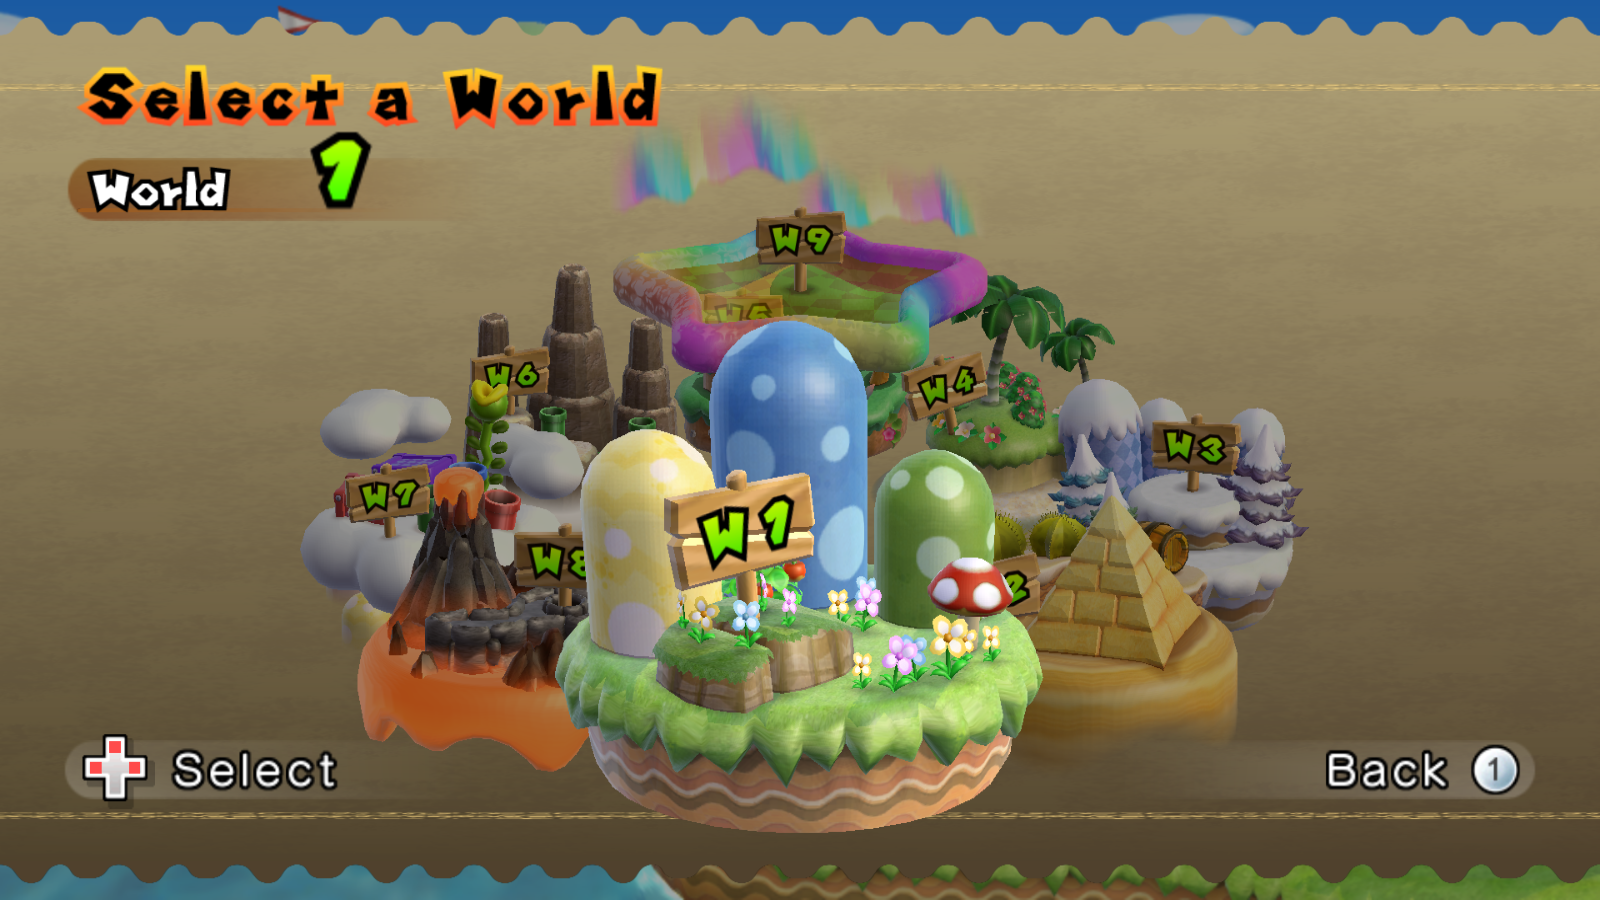 World 6 (New Super Mario Bros. Wii), Wii Wiki